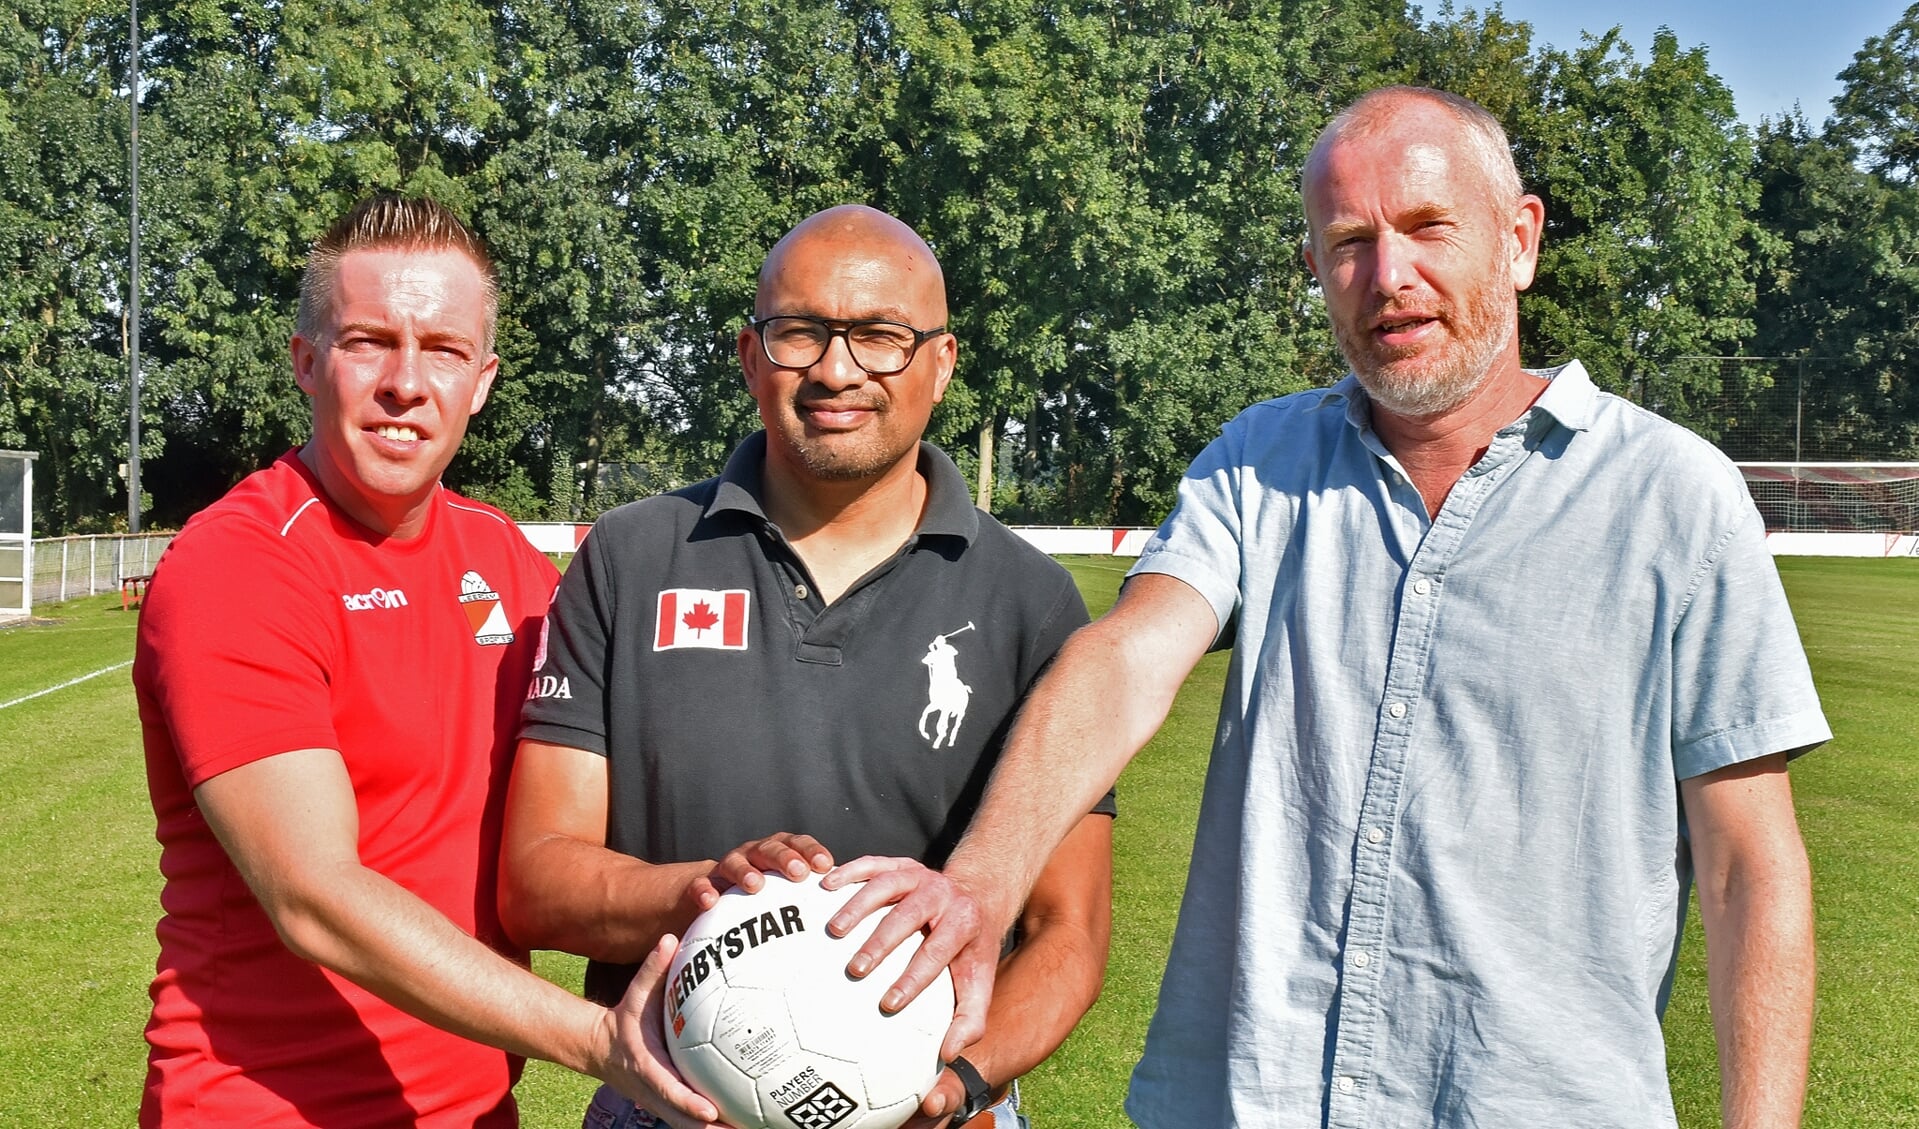 • Van Beest, Latumaerissa en Elbertse zien walking football wel zitten.